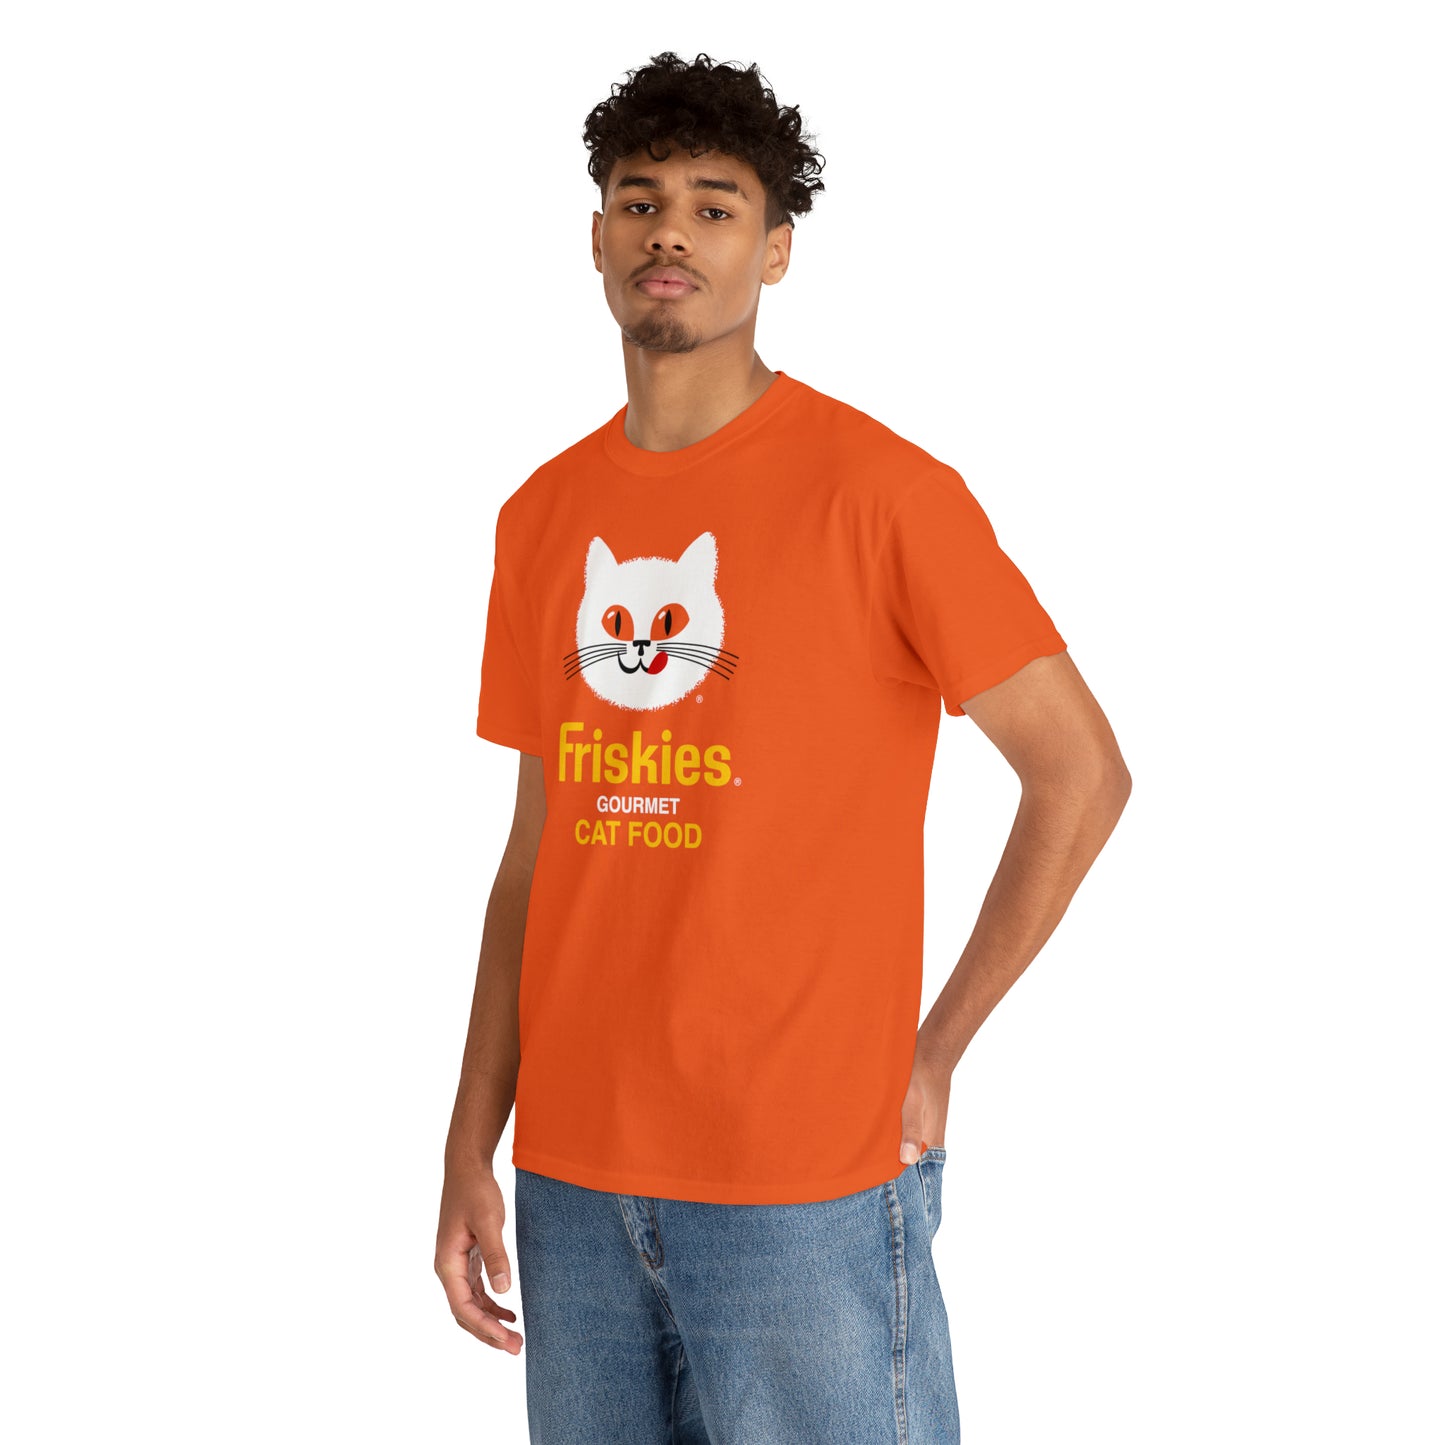 Friskies Cat Food T-Shirt